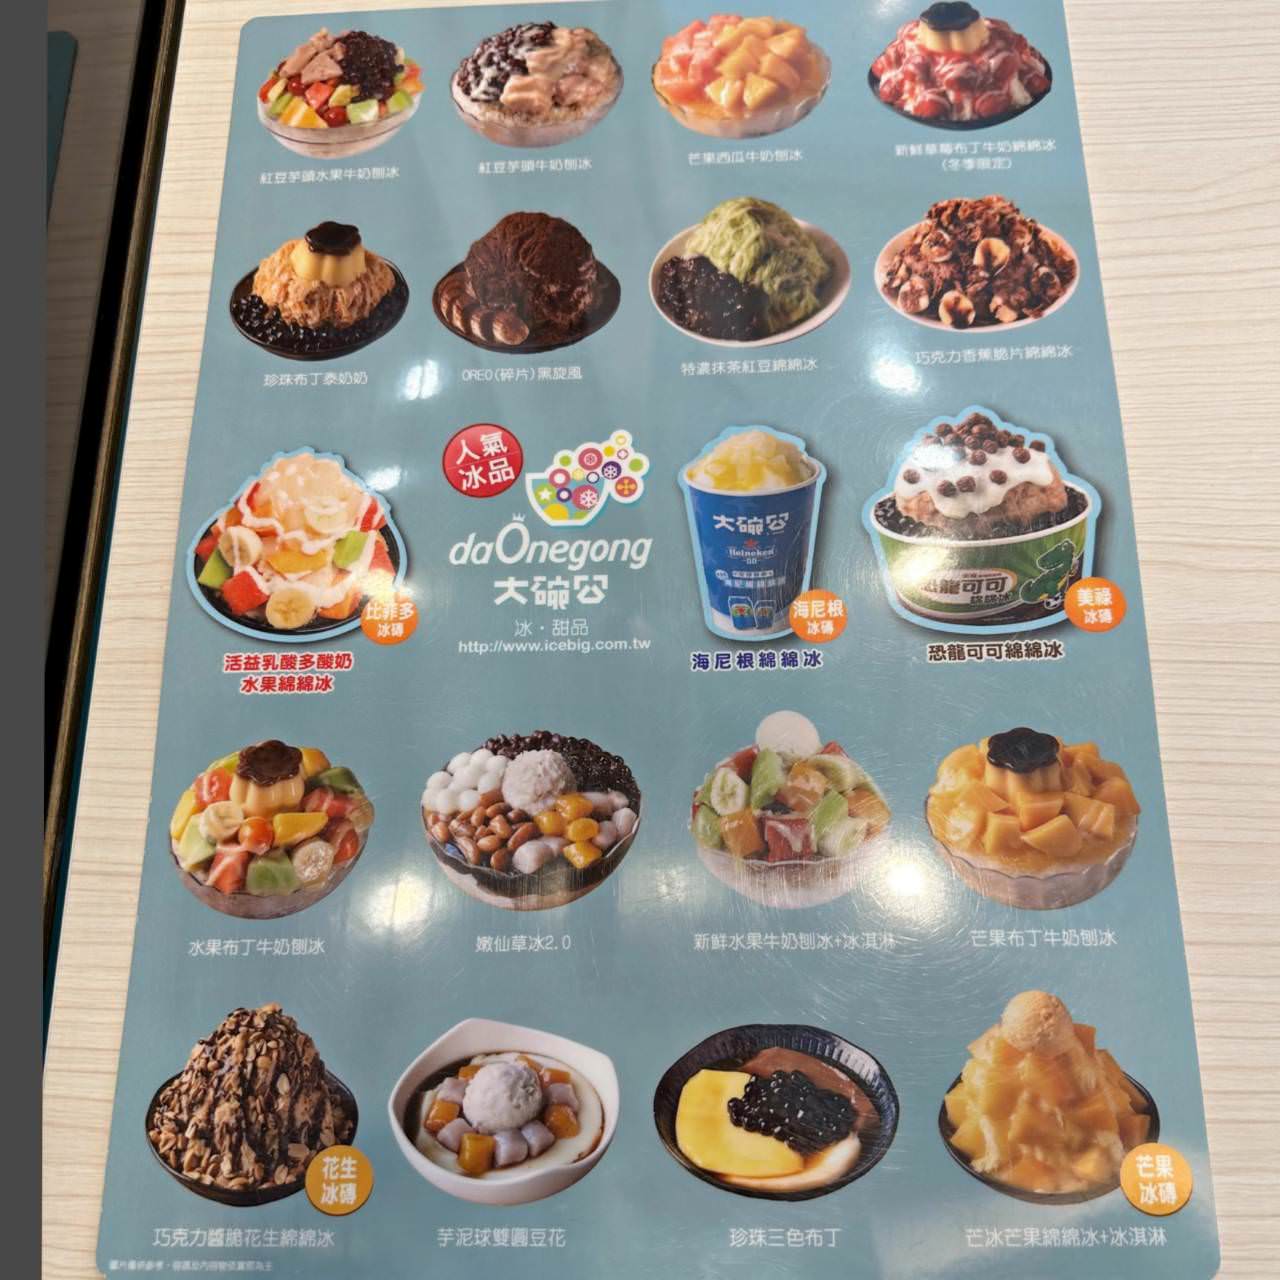 大碗公冰甜品 台南府前店7 1